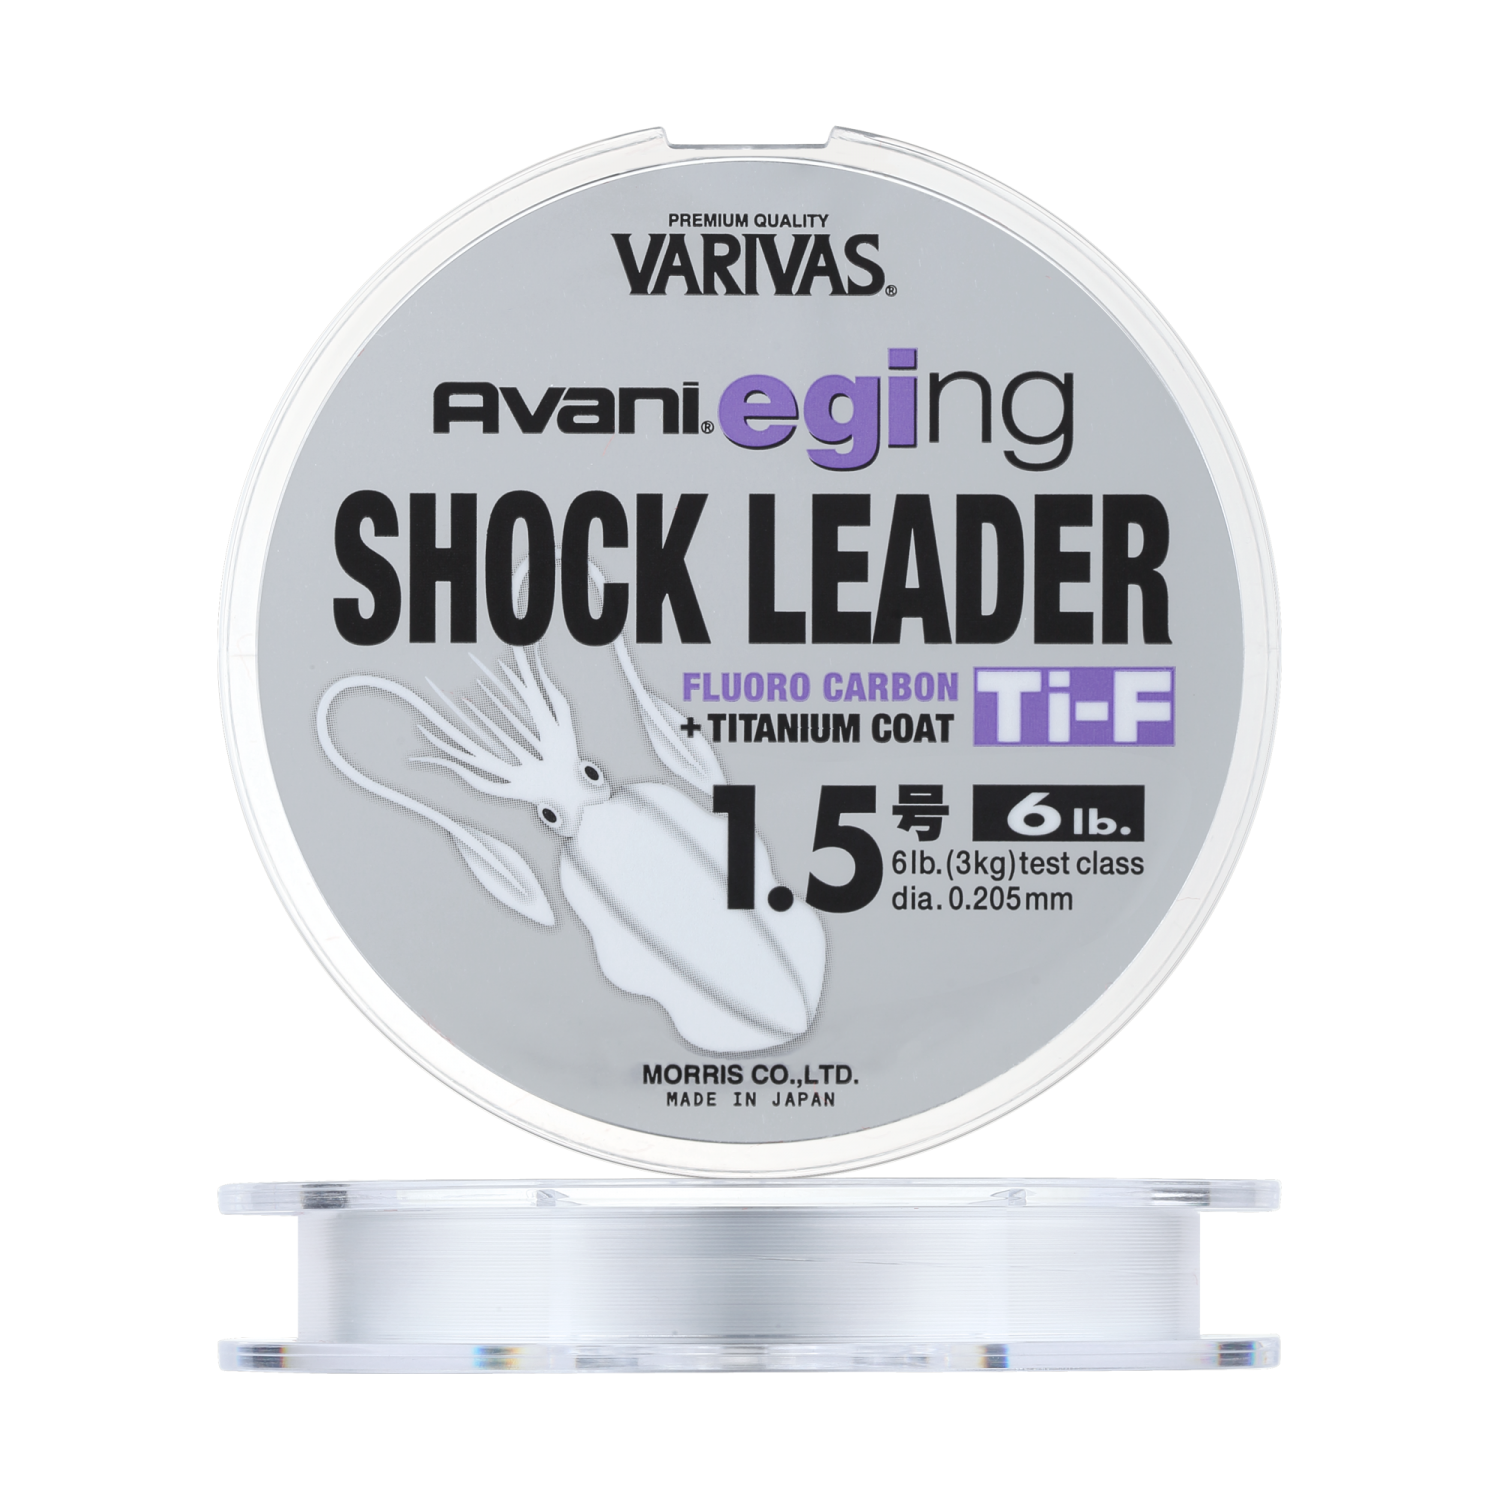 леска флюорокарбоновая varivas trout shock leader fluoro carbon 30m 0 6 Флюорокарбон Varivas Avani Eging Shock Leader Ti Fluoro Carbon #1,5 0,205мм 30м (clear)